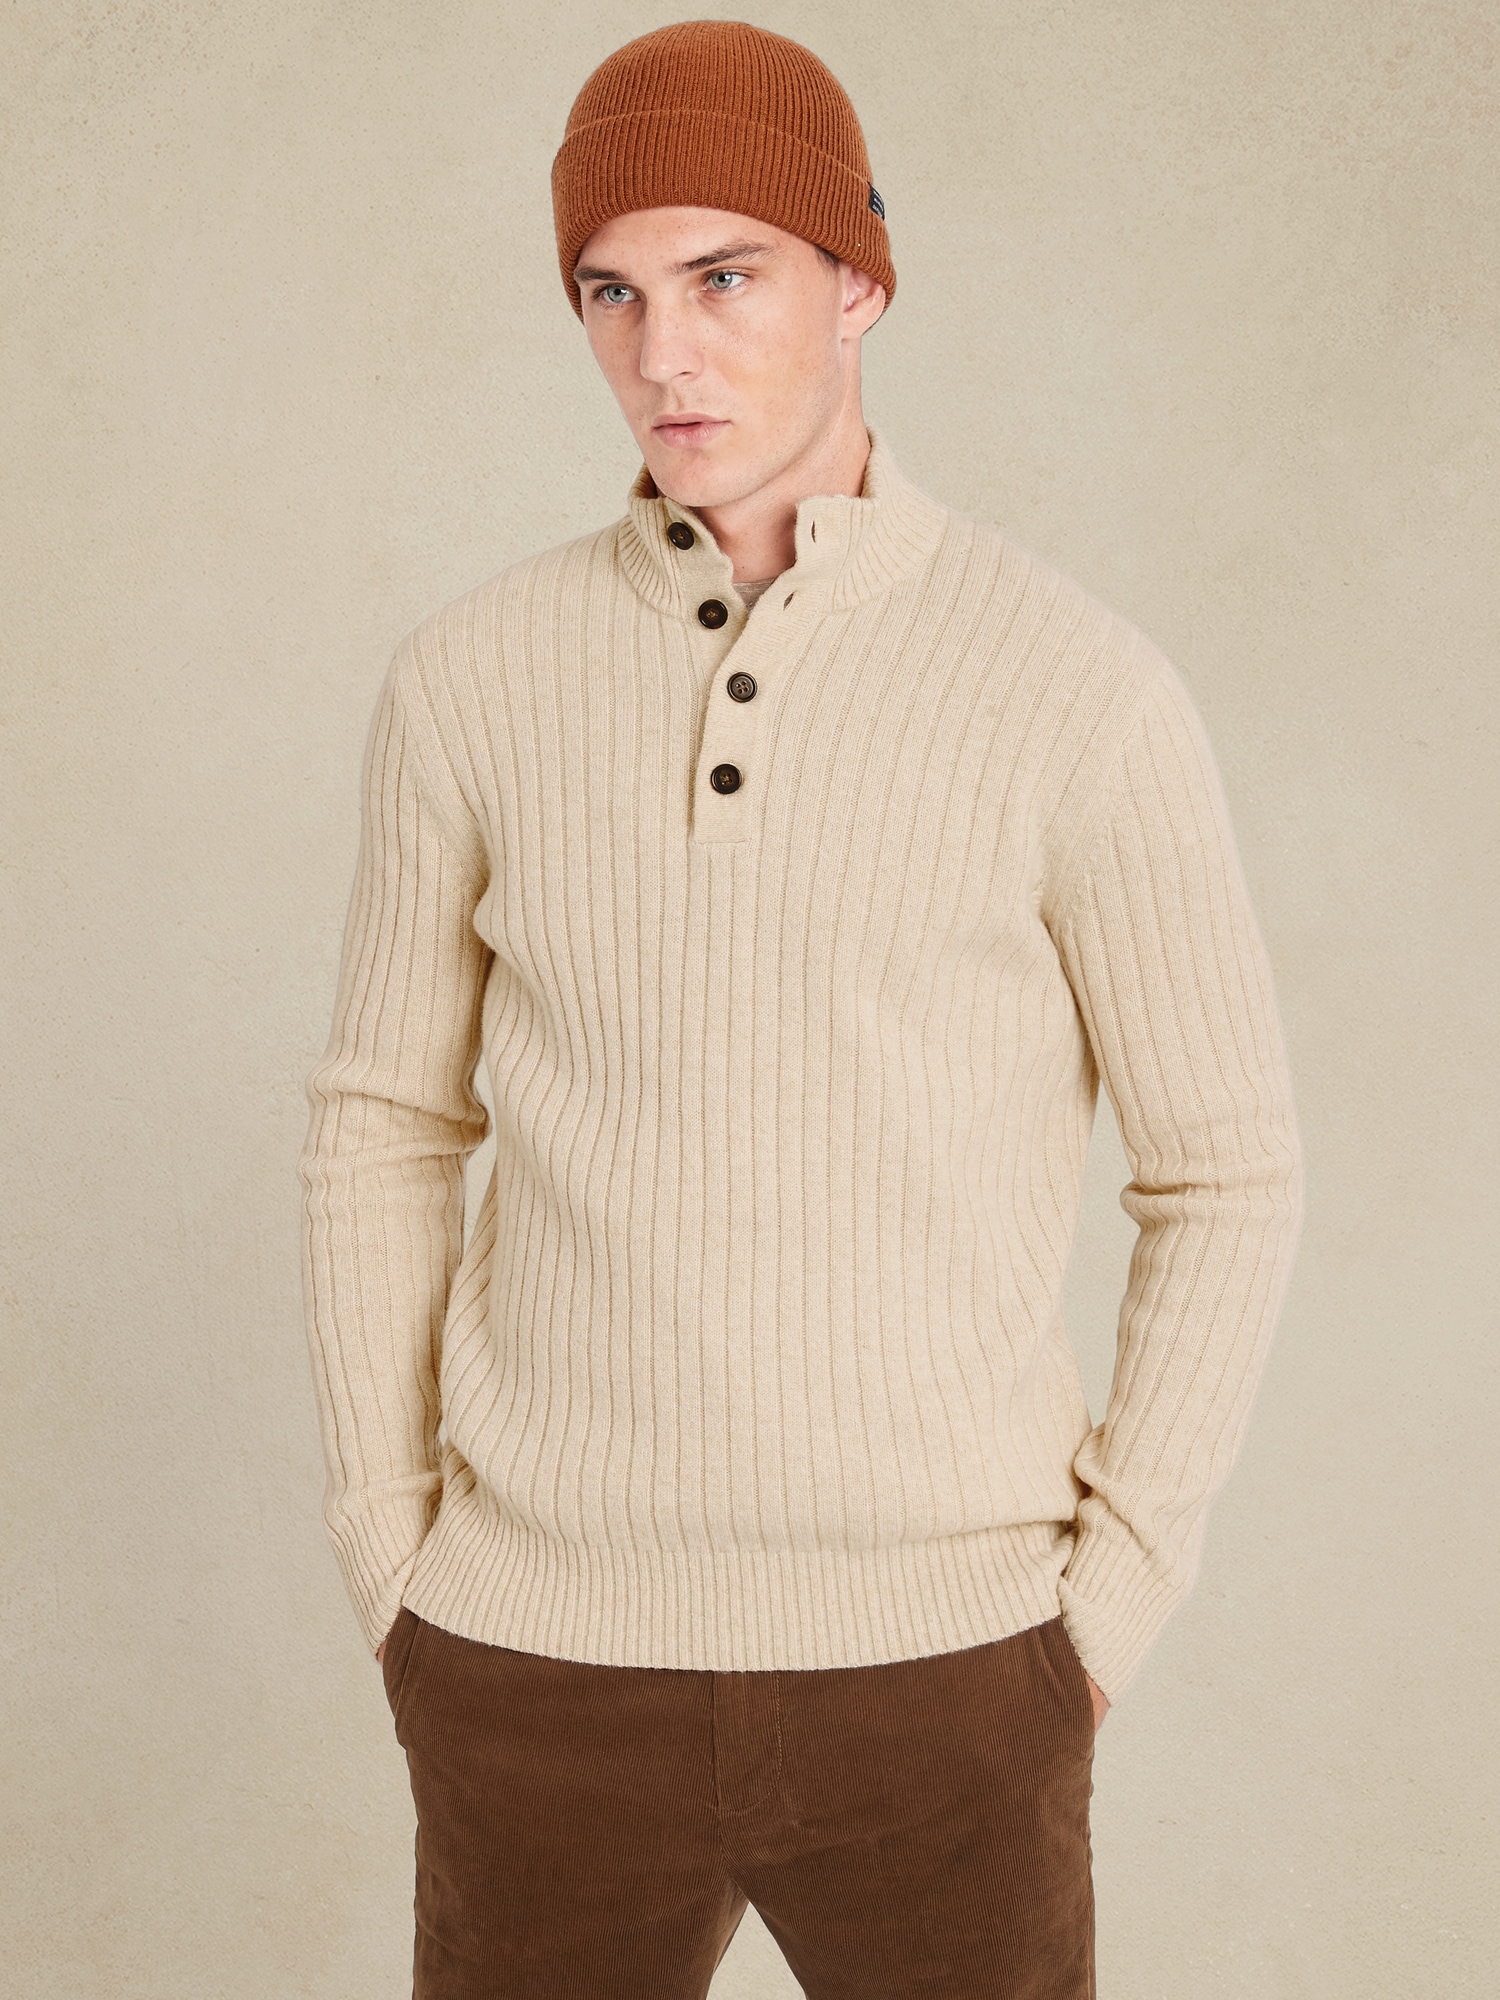 Italian Wool-Blend Mock-Neck Sweater